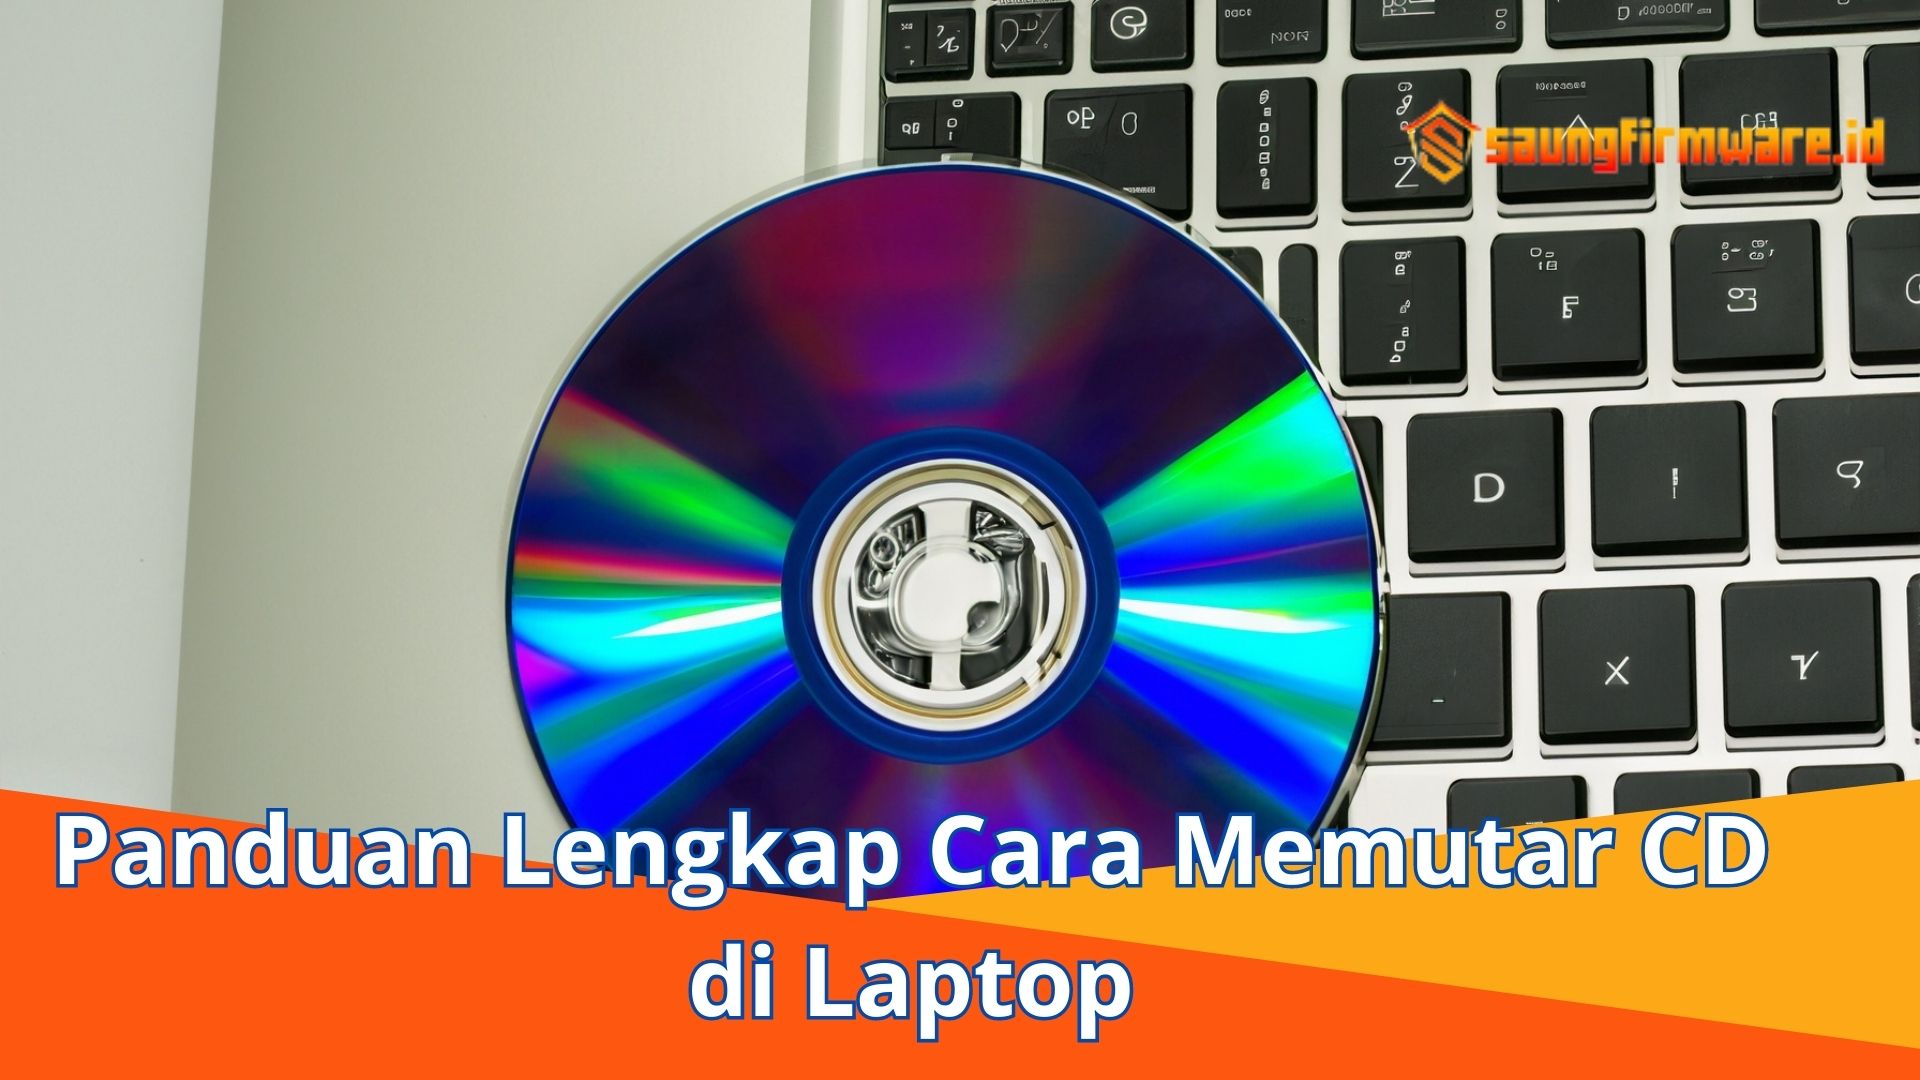 Panduan Lengkap Cara Memutar CD di Laptop